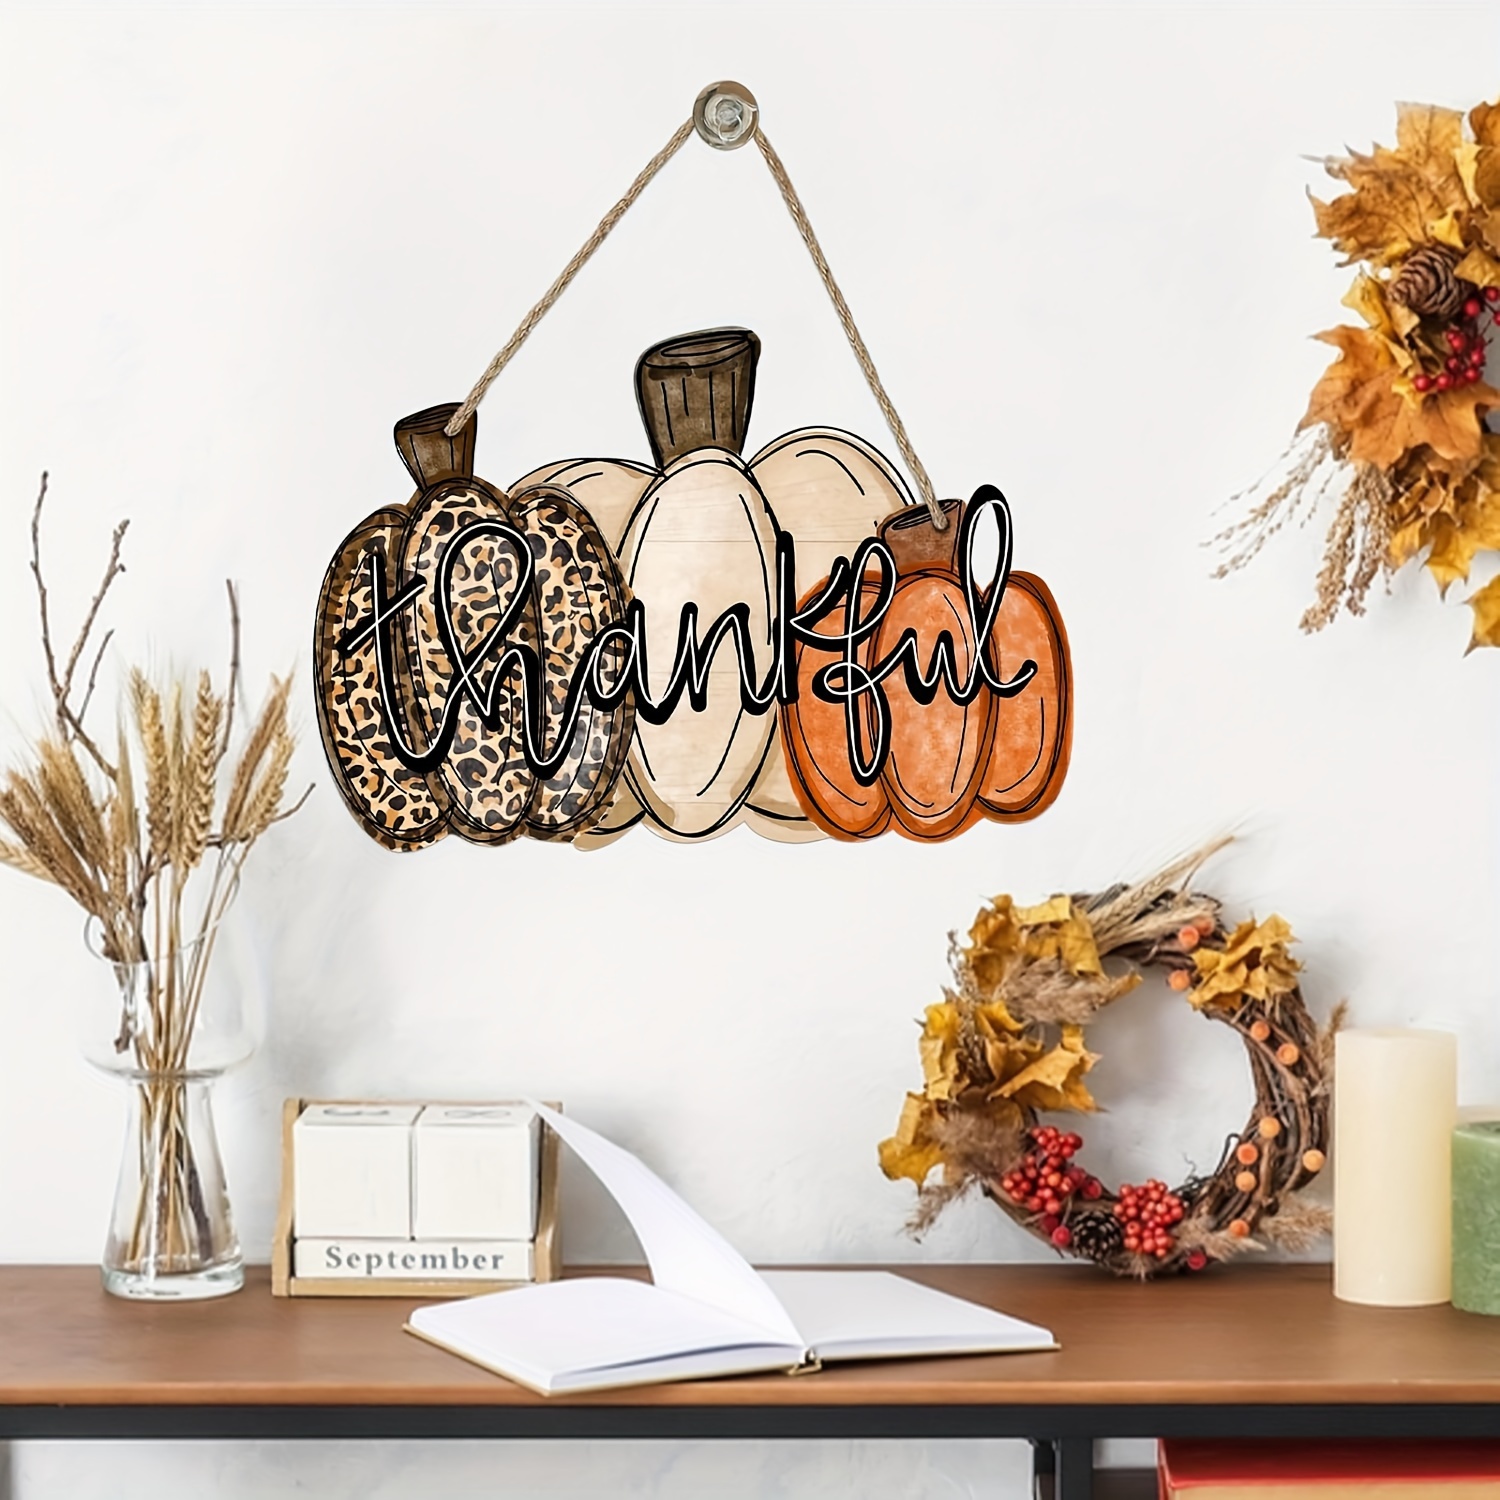 

Thankful Autumn Pumpkin Wooden Door Hanger - Fall Thanksgiving Decor, Leopard Print Wreath For Outdoor Porch